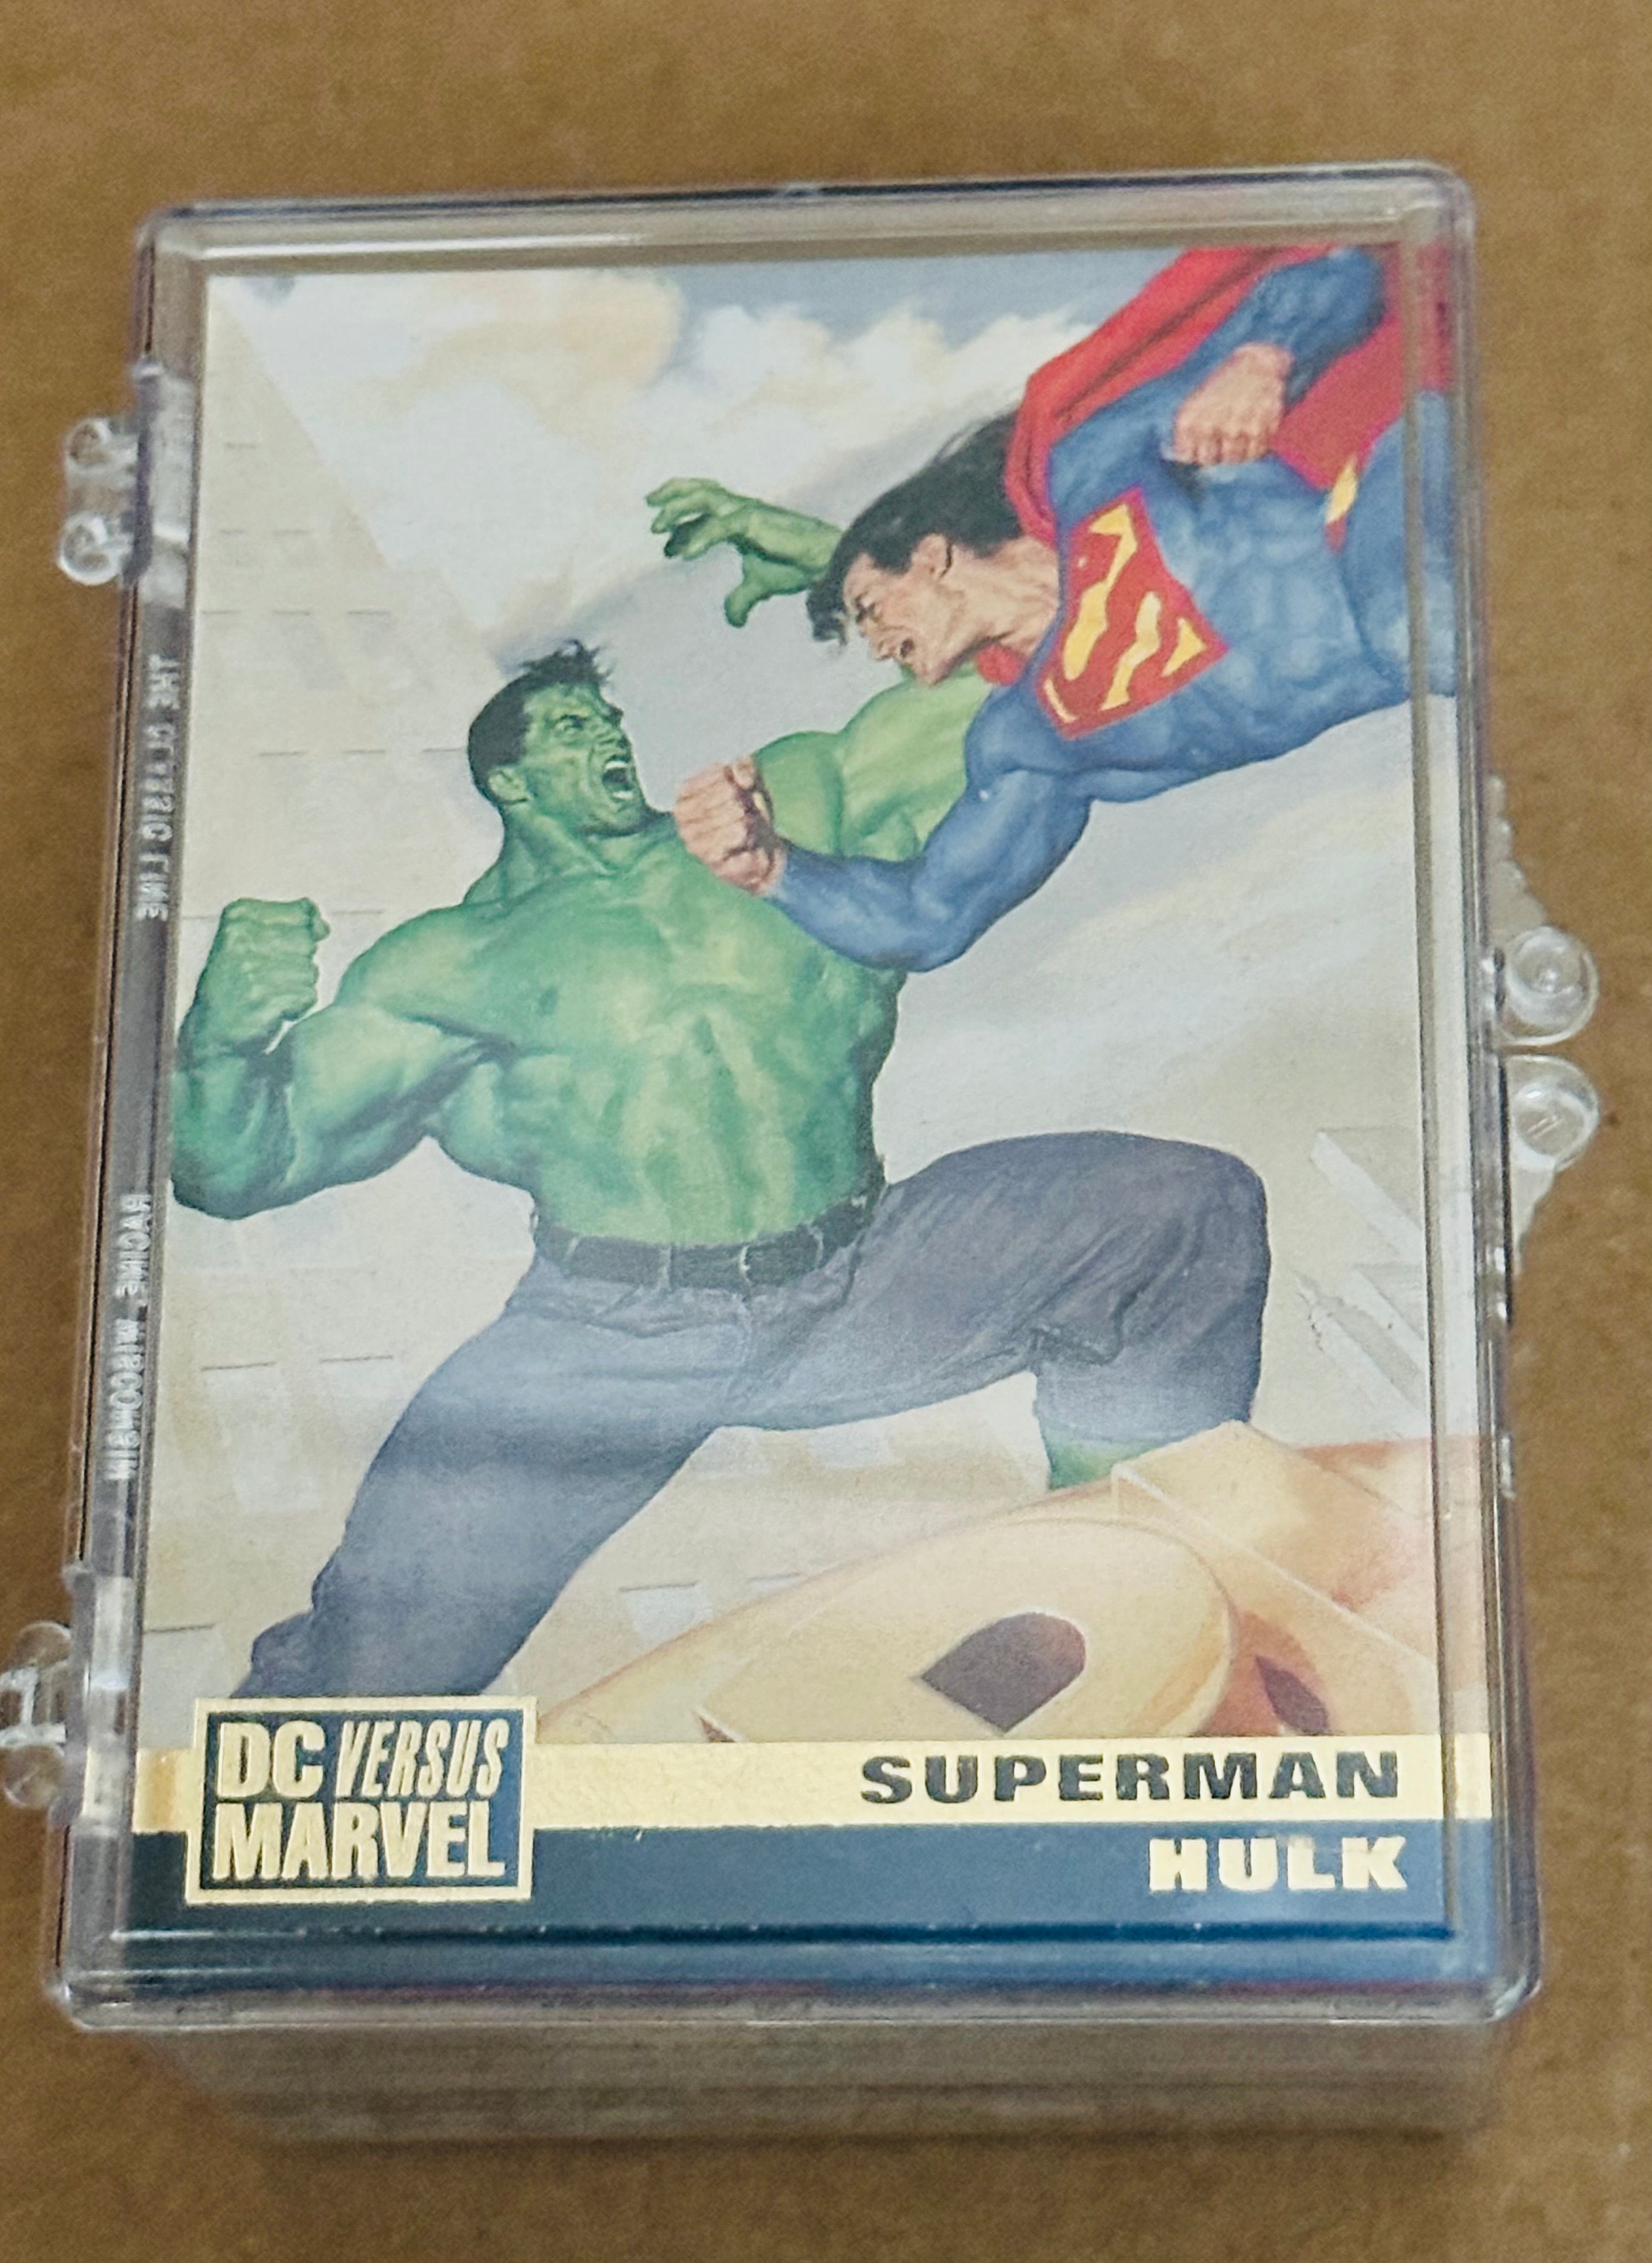 Marvel vs DC cards set 1995